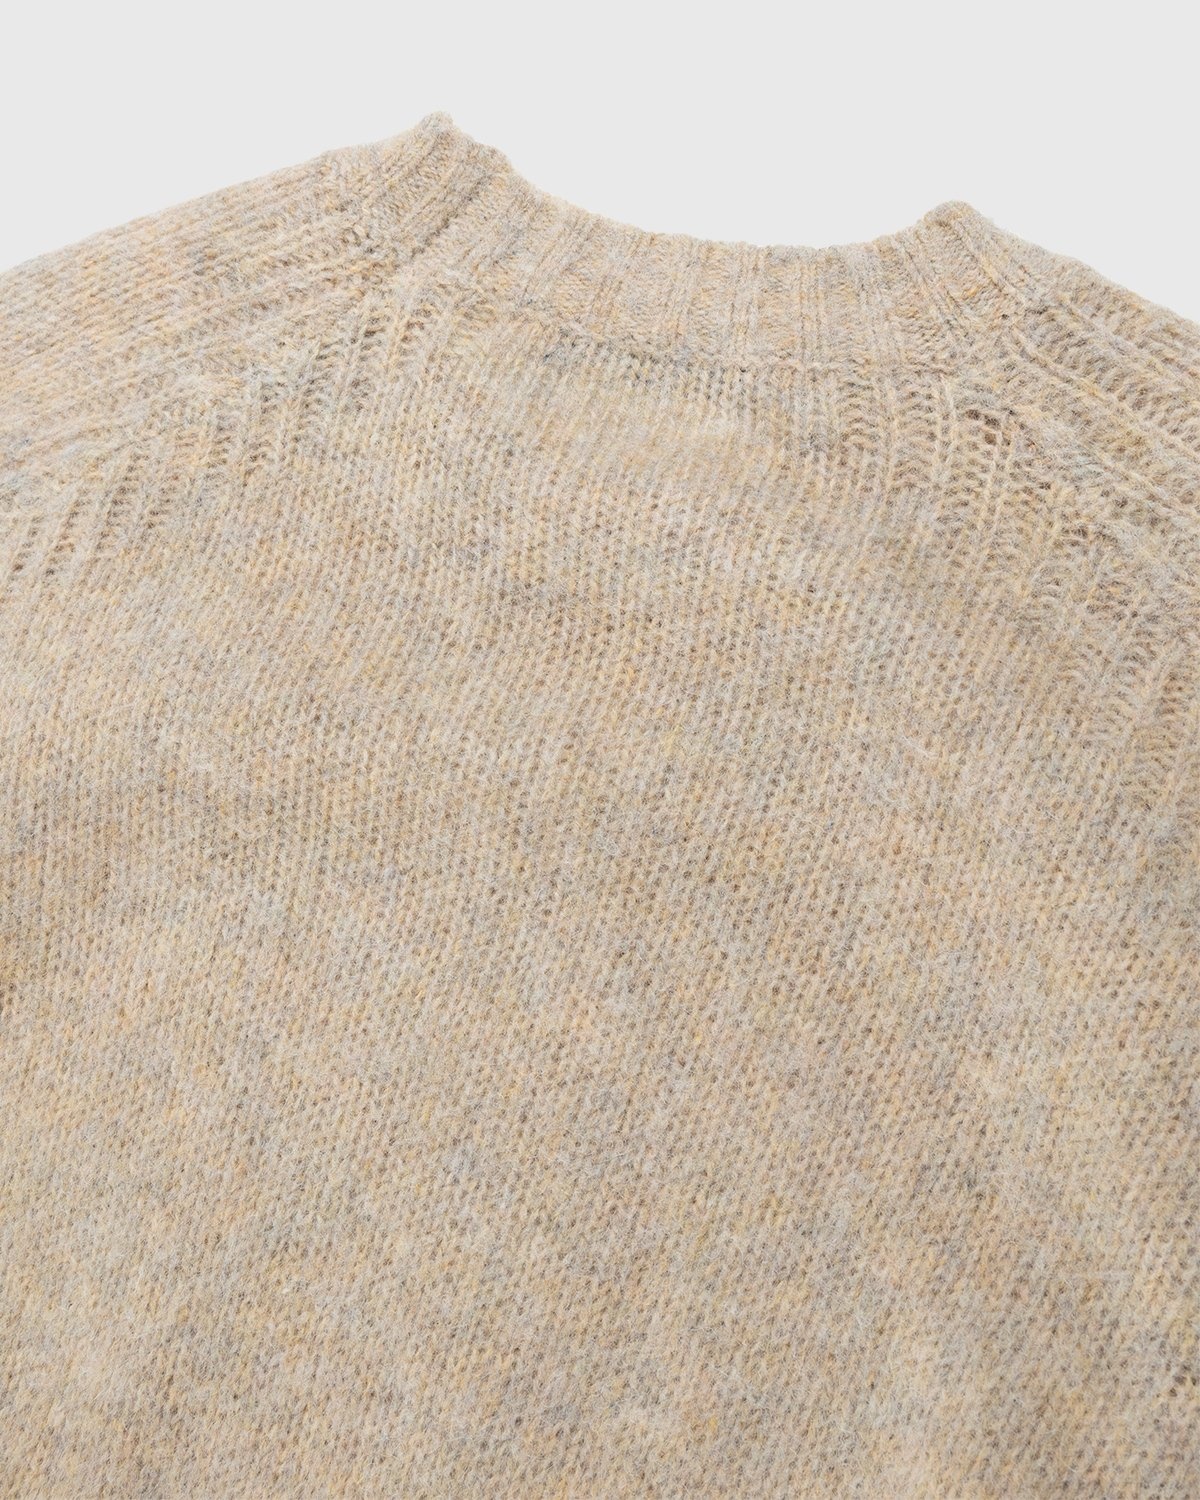 Acne Studios – Brushed Wool Crewneck Sweater Toffee Brown - Crewnecks - Brown - Image 5